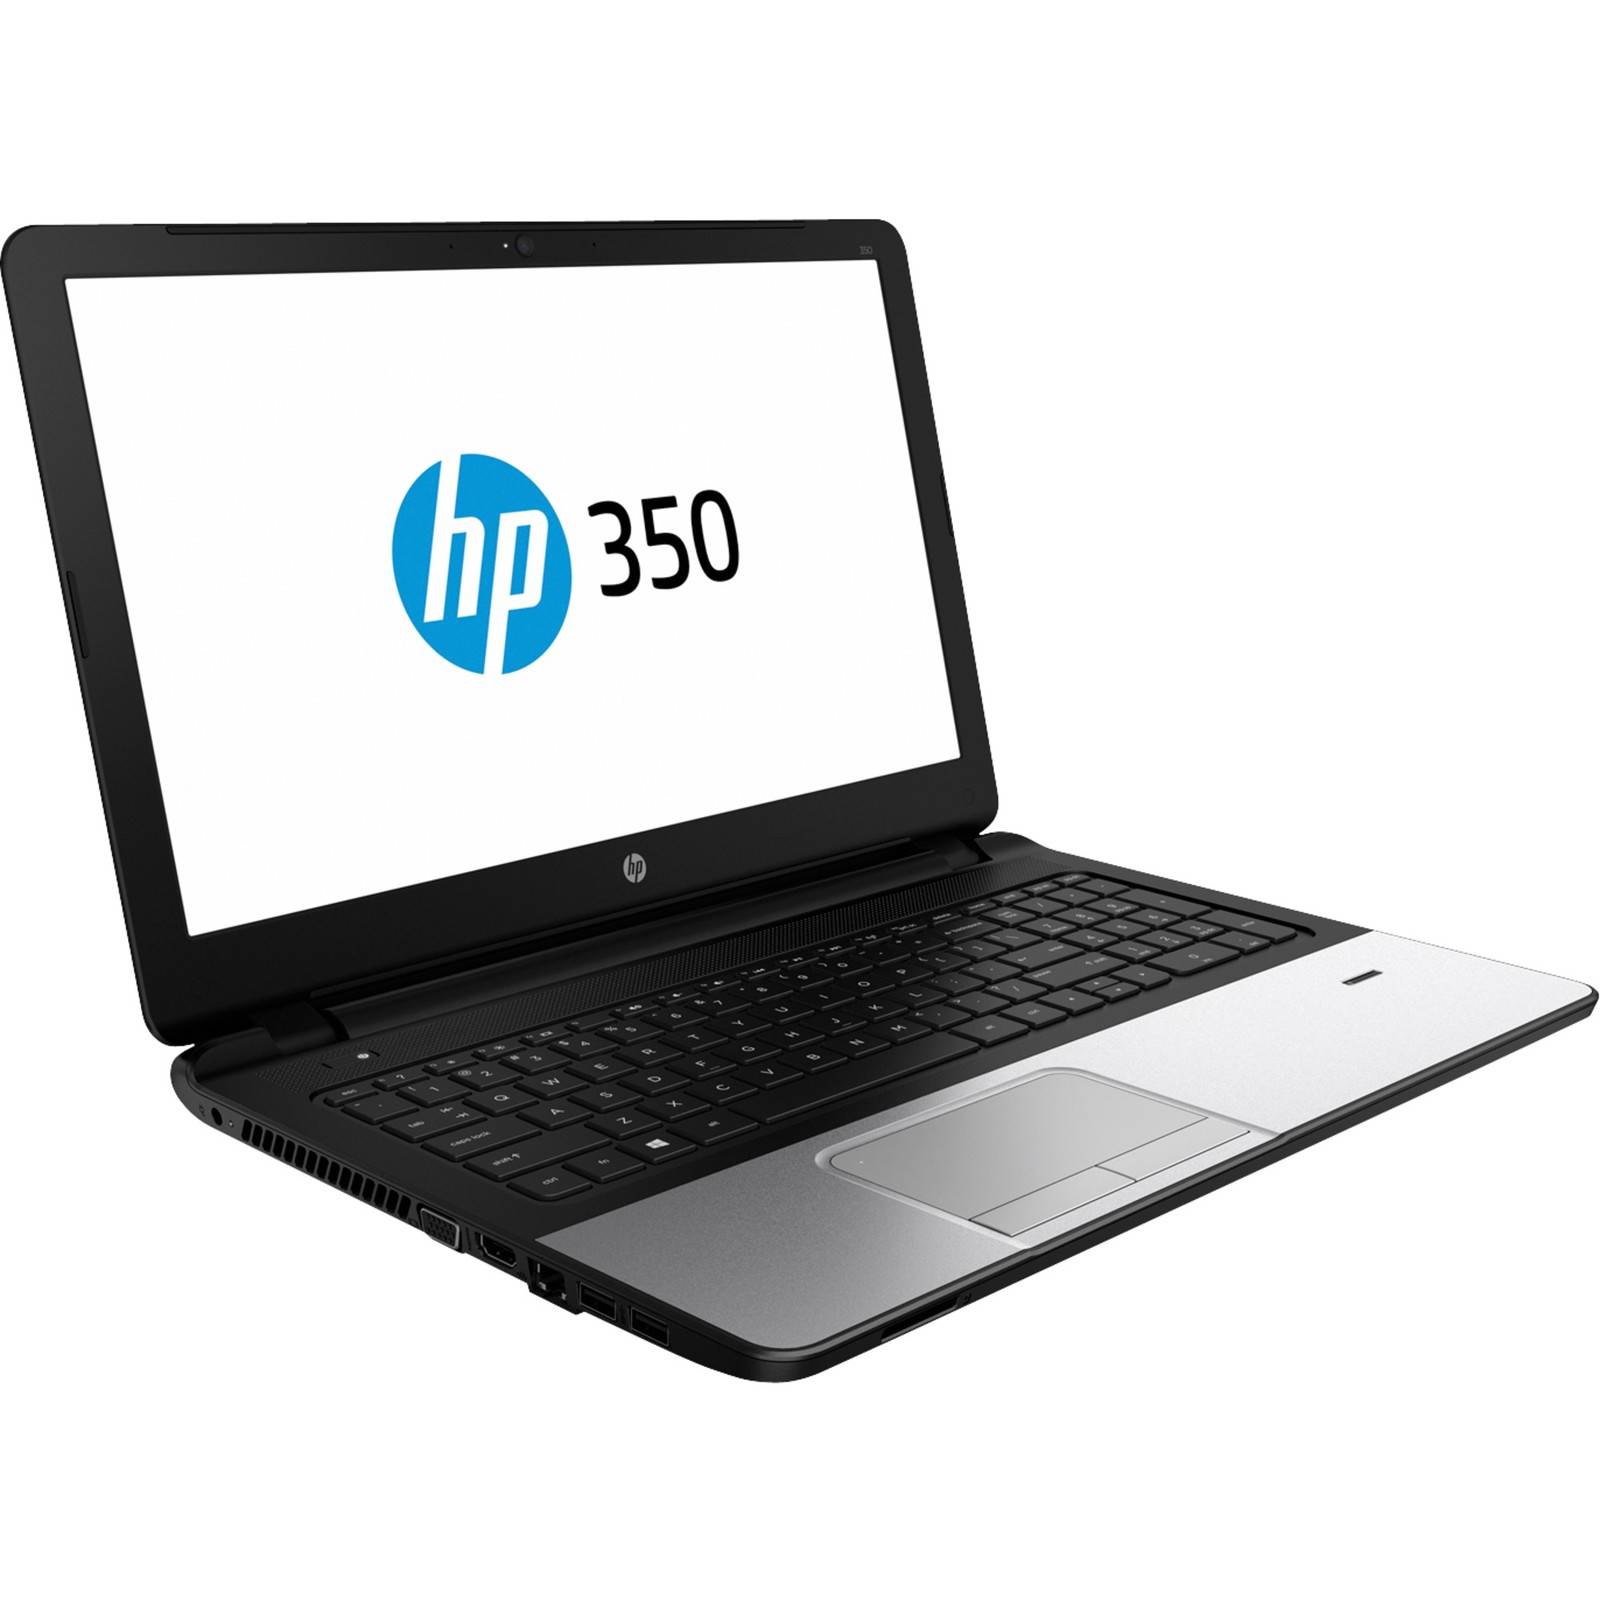 HP 350 G2 15,6″ Notebook L8B11ES für nur 269,- Euro inkl. Versand